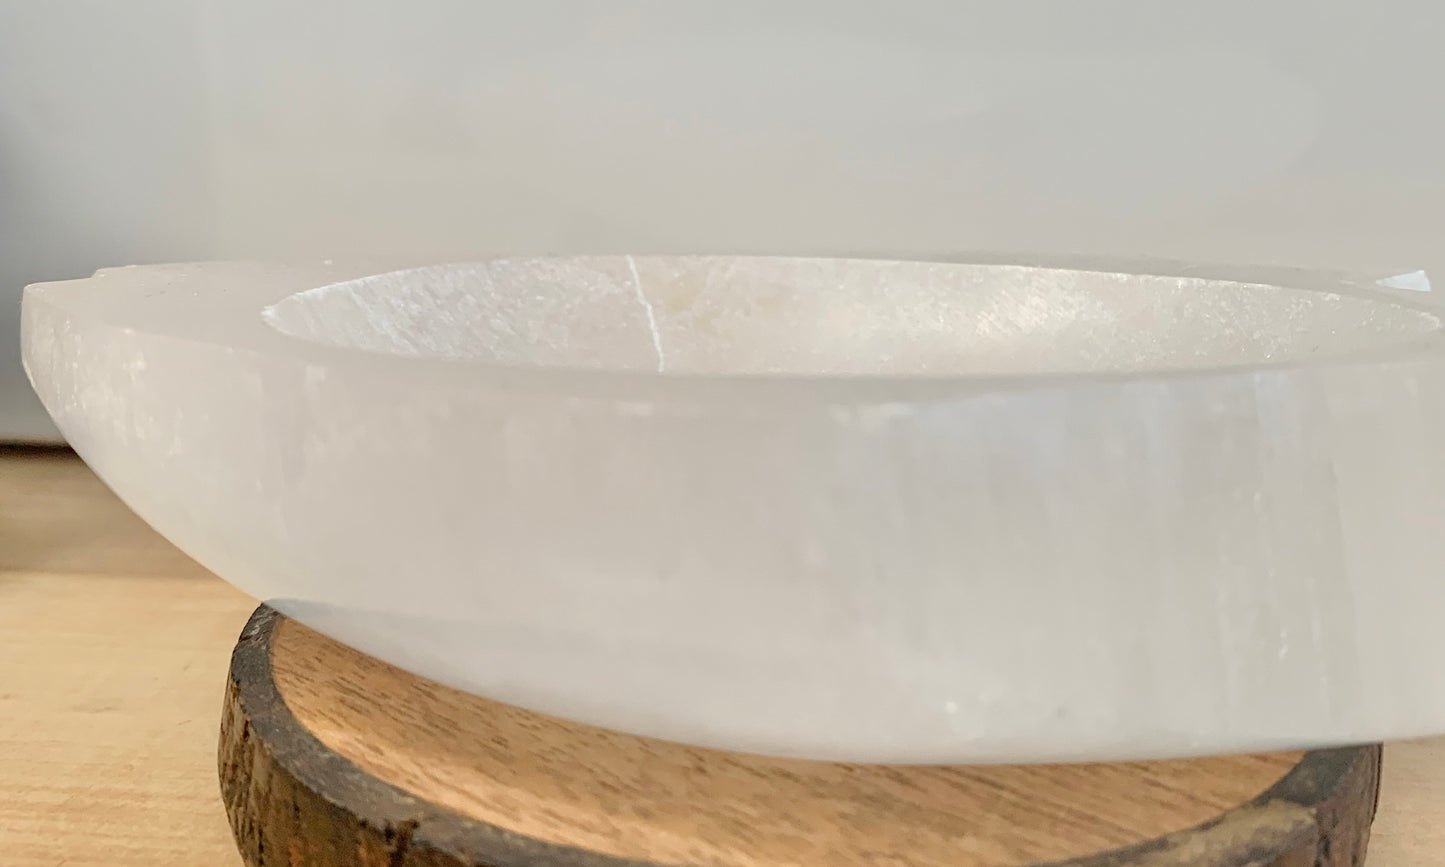 Satin Spar fish decorative crystal bowl/dish